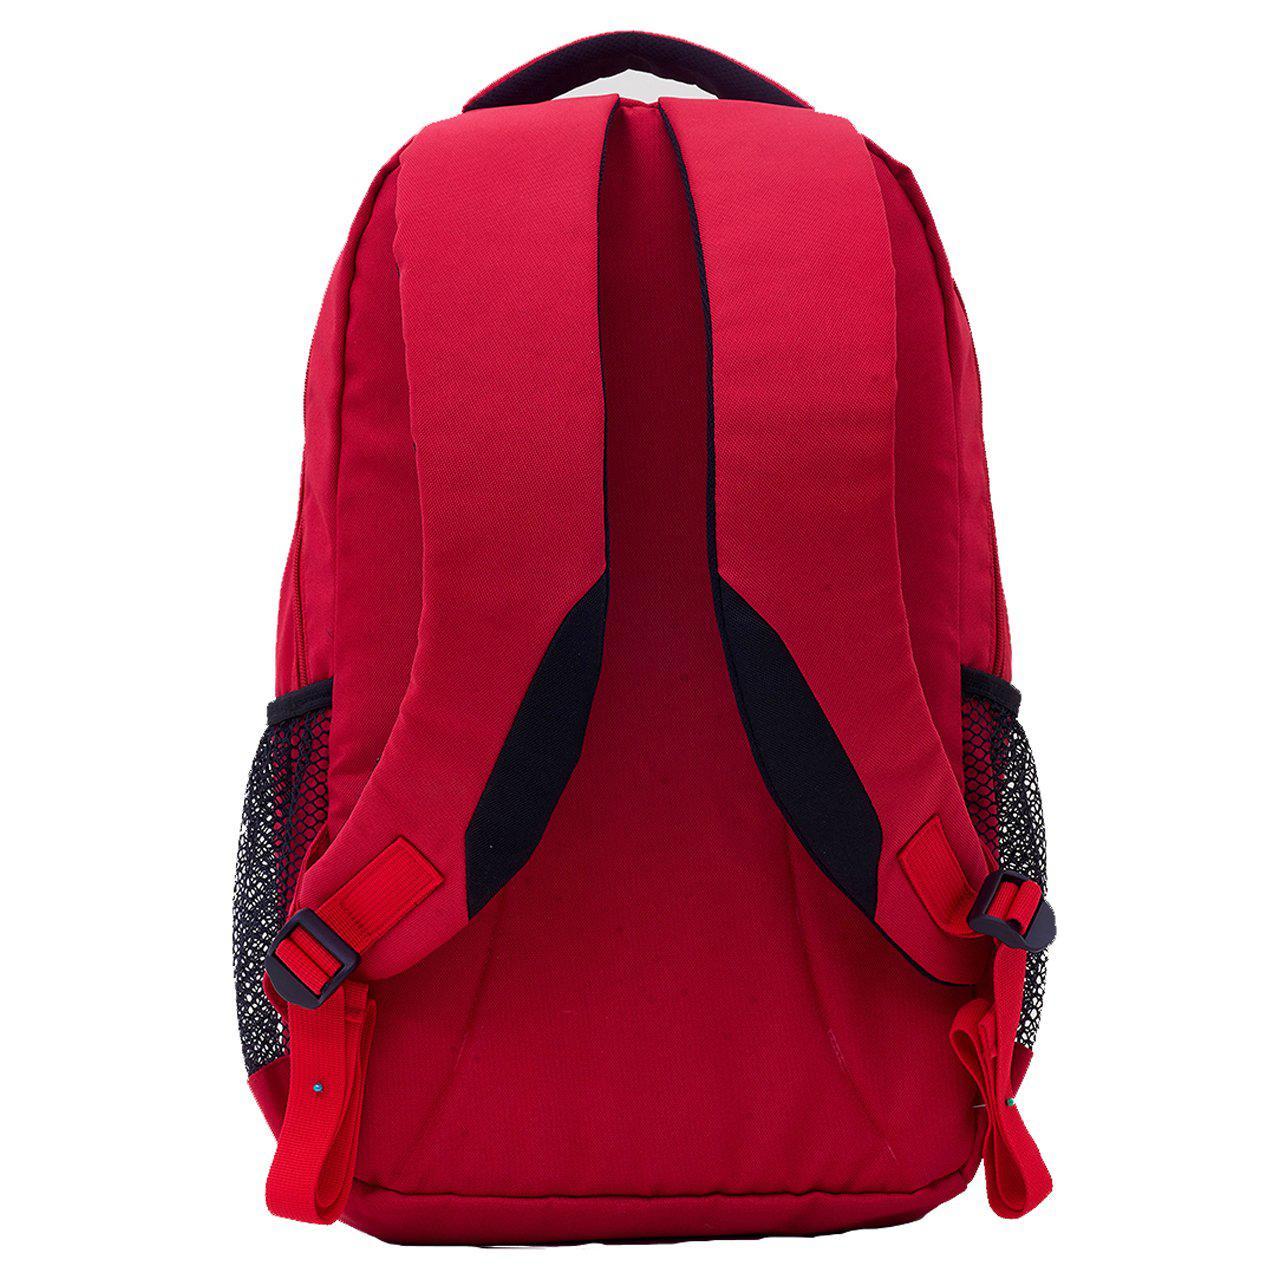 Juaraga Persija Ransel Backpack - Logo Macan - Merah juaraga.id